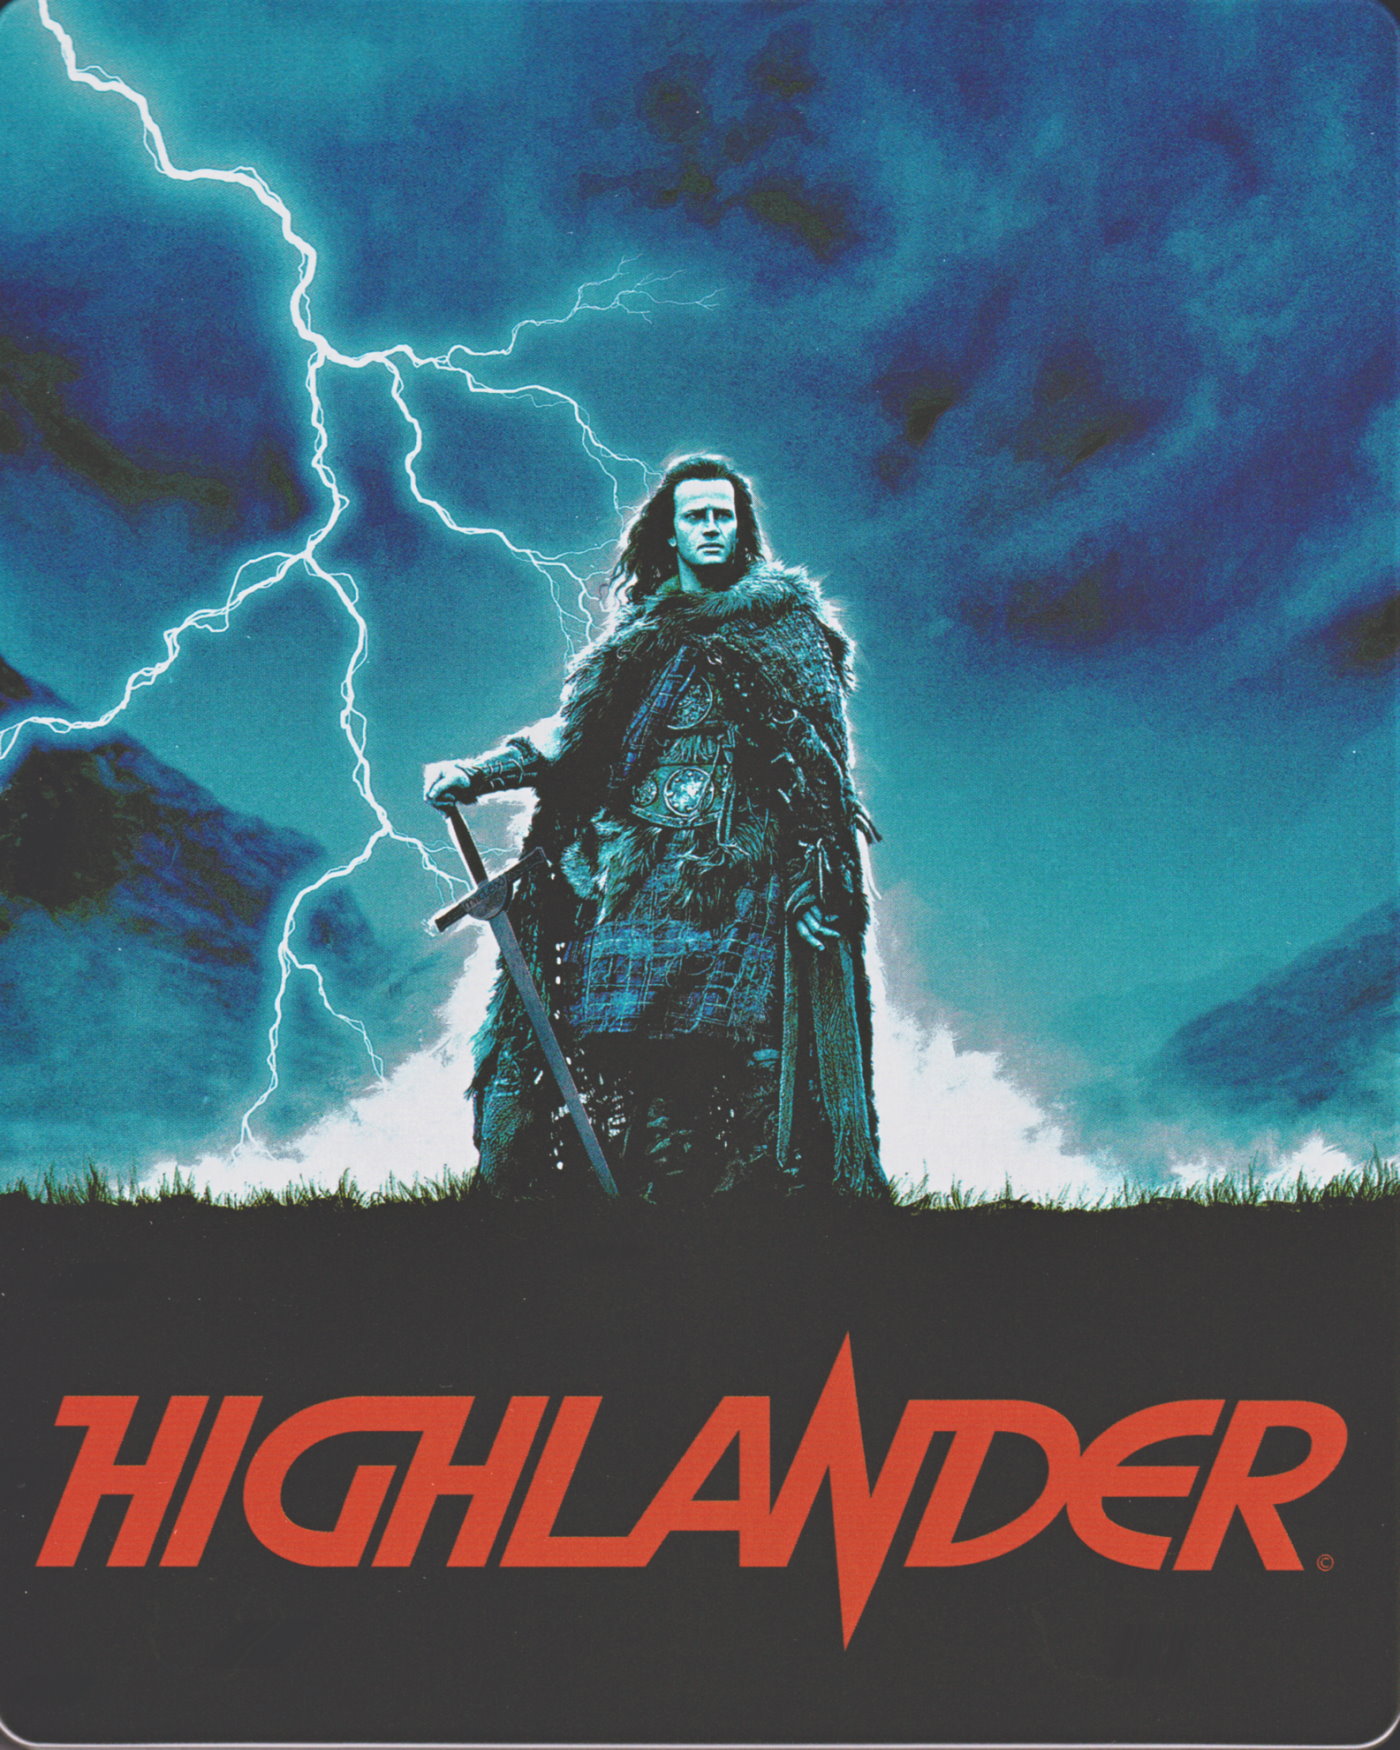 Cover - Highlander - Es kann nur einen geben.jpg